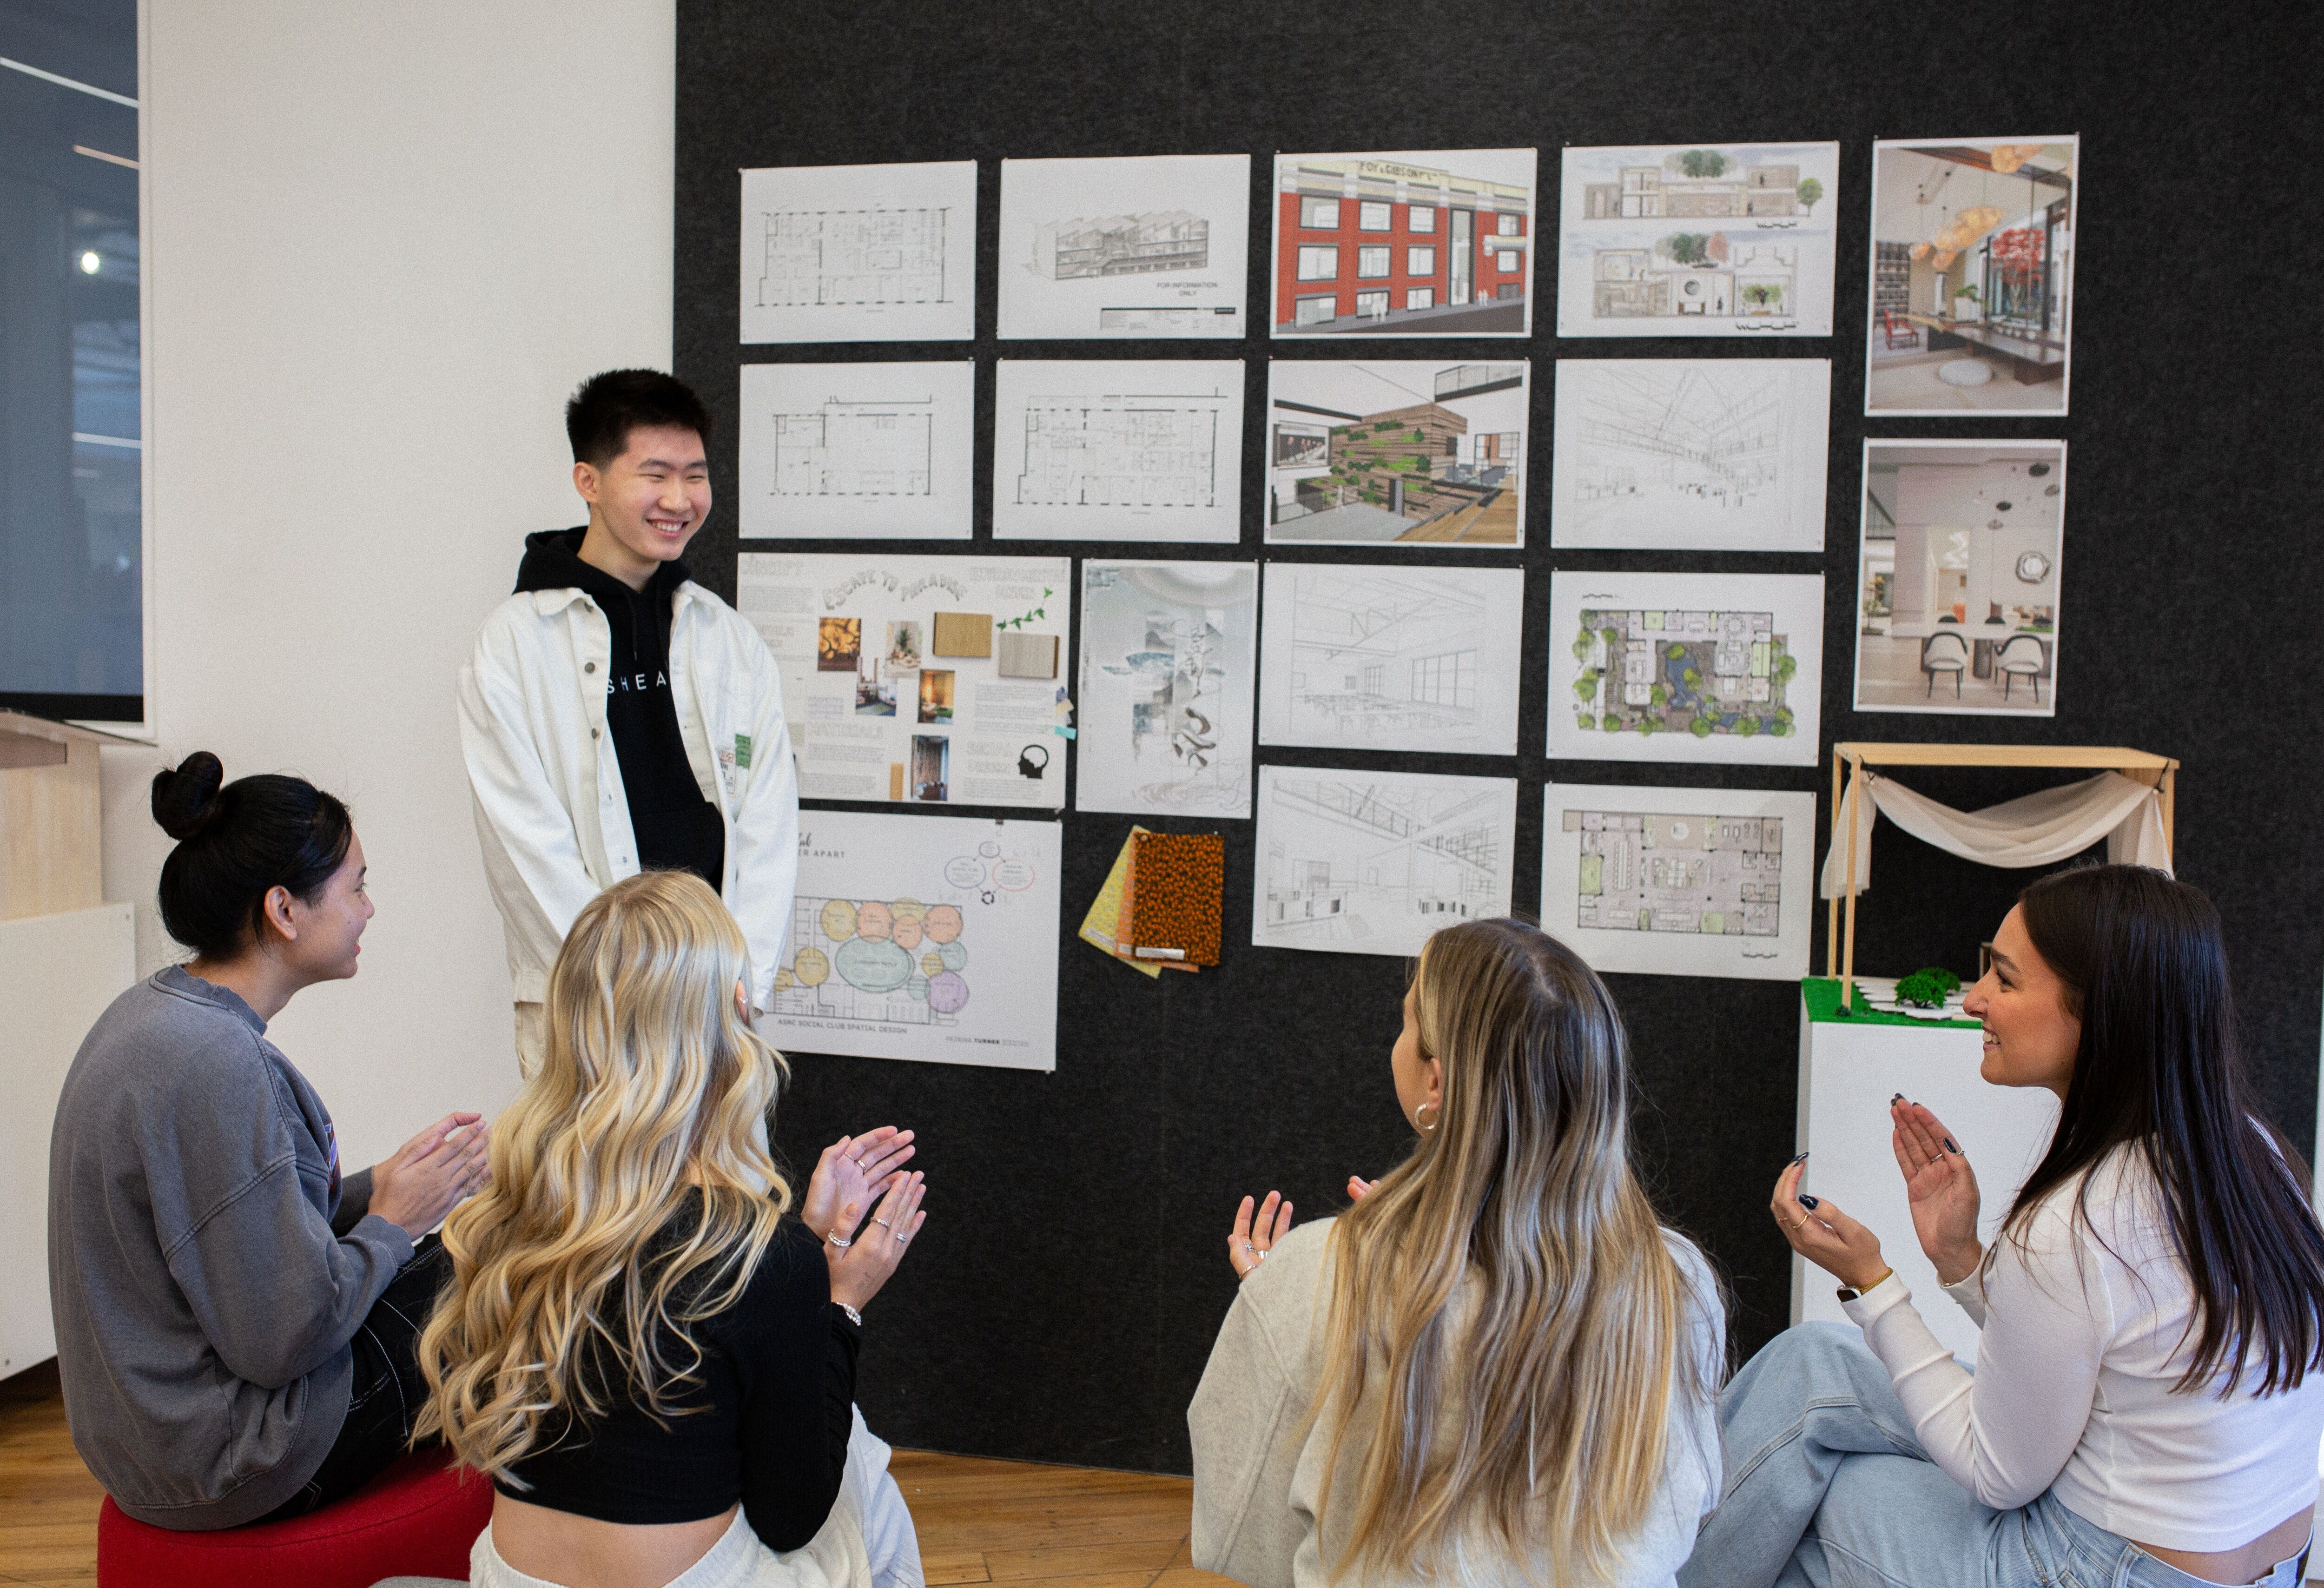 Un estudiante presenta diseños arquitectónicos a un grupo atento, exhibiendo planos detallados y modelos en una pared de galería.